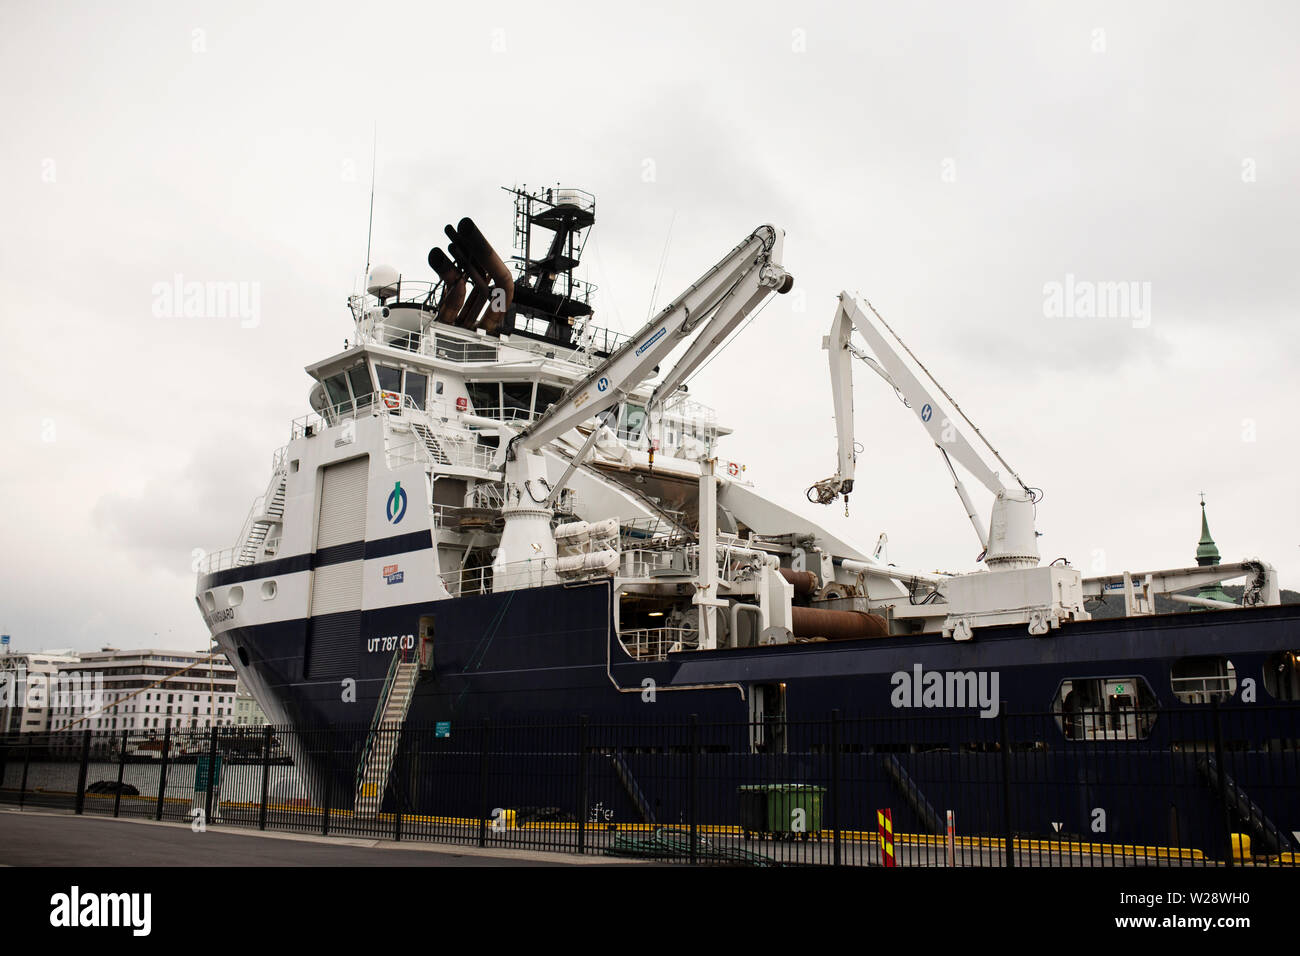 Die Insel Avantgarde, eine offshore Tug und Schiff zur Versorgung der norwegischen Ursprungs, im Hafen in Bergen, Norwegen angedockt. Stockfoto